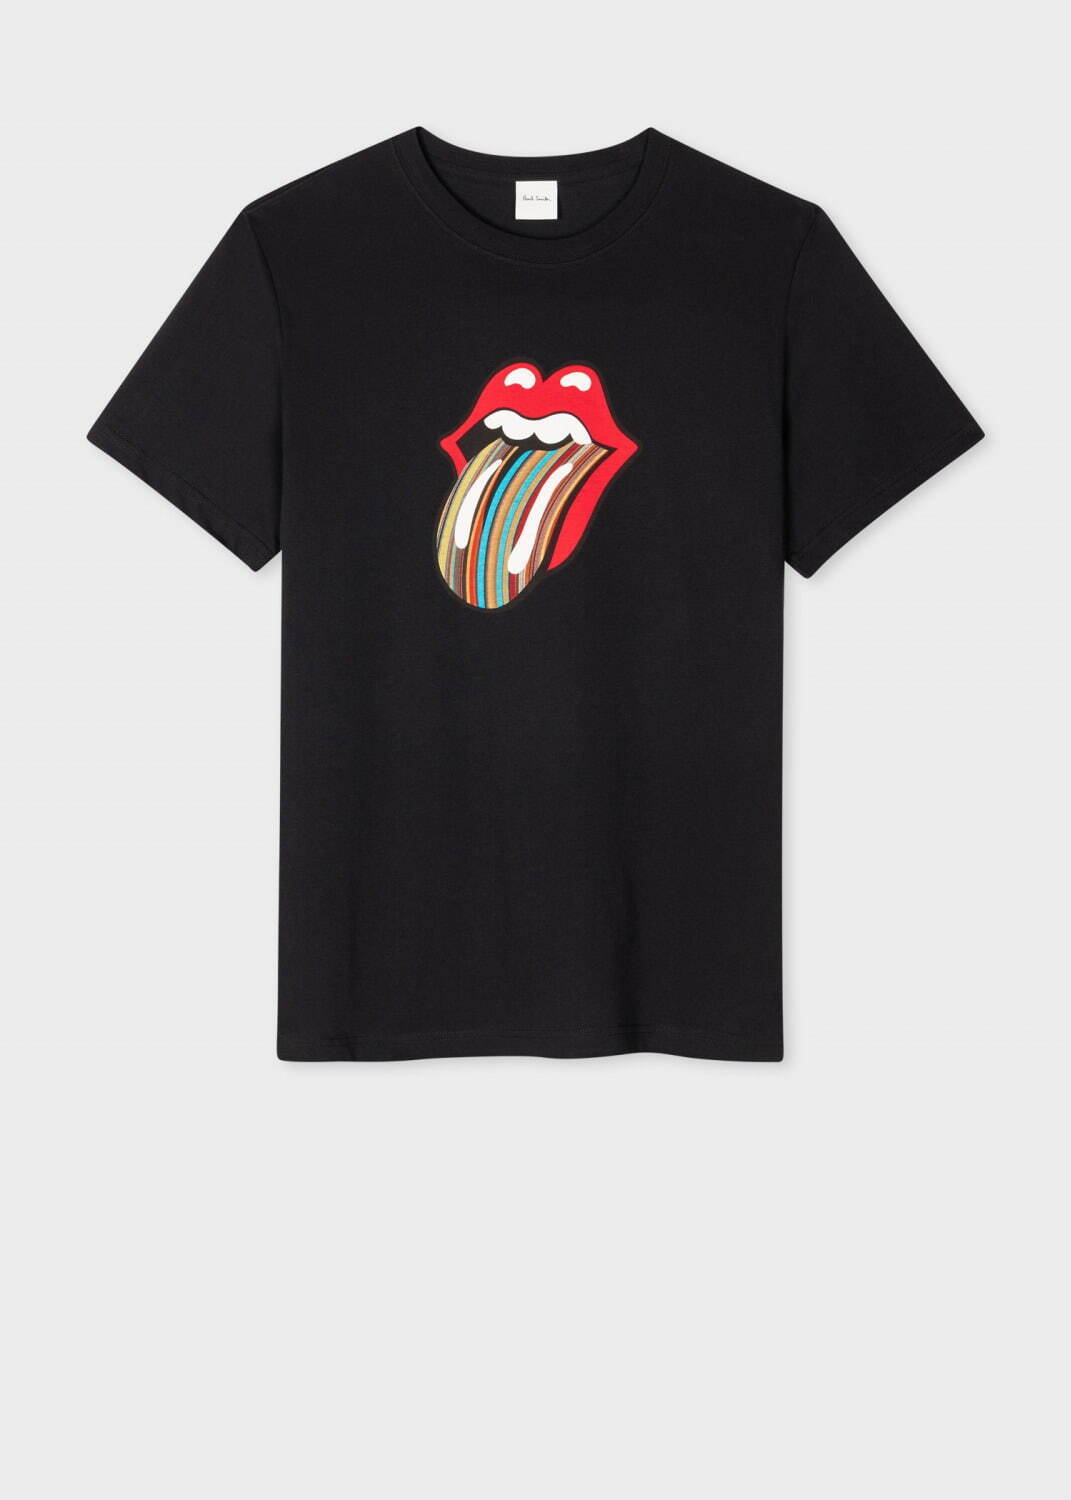 ポール・スミス  Tシャツ  The Rolling Stones手元に在庫あり即日発送可能です